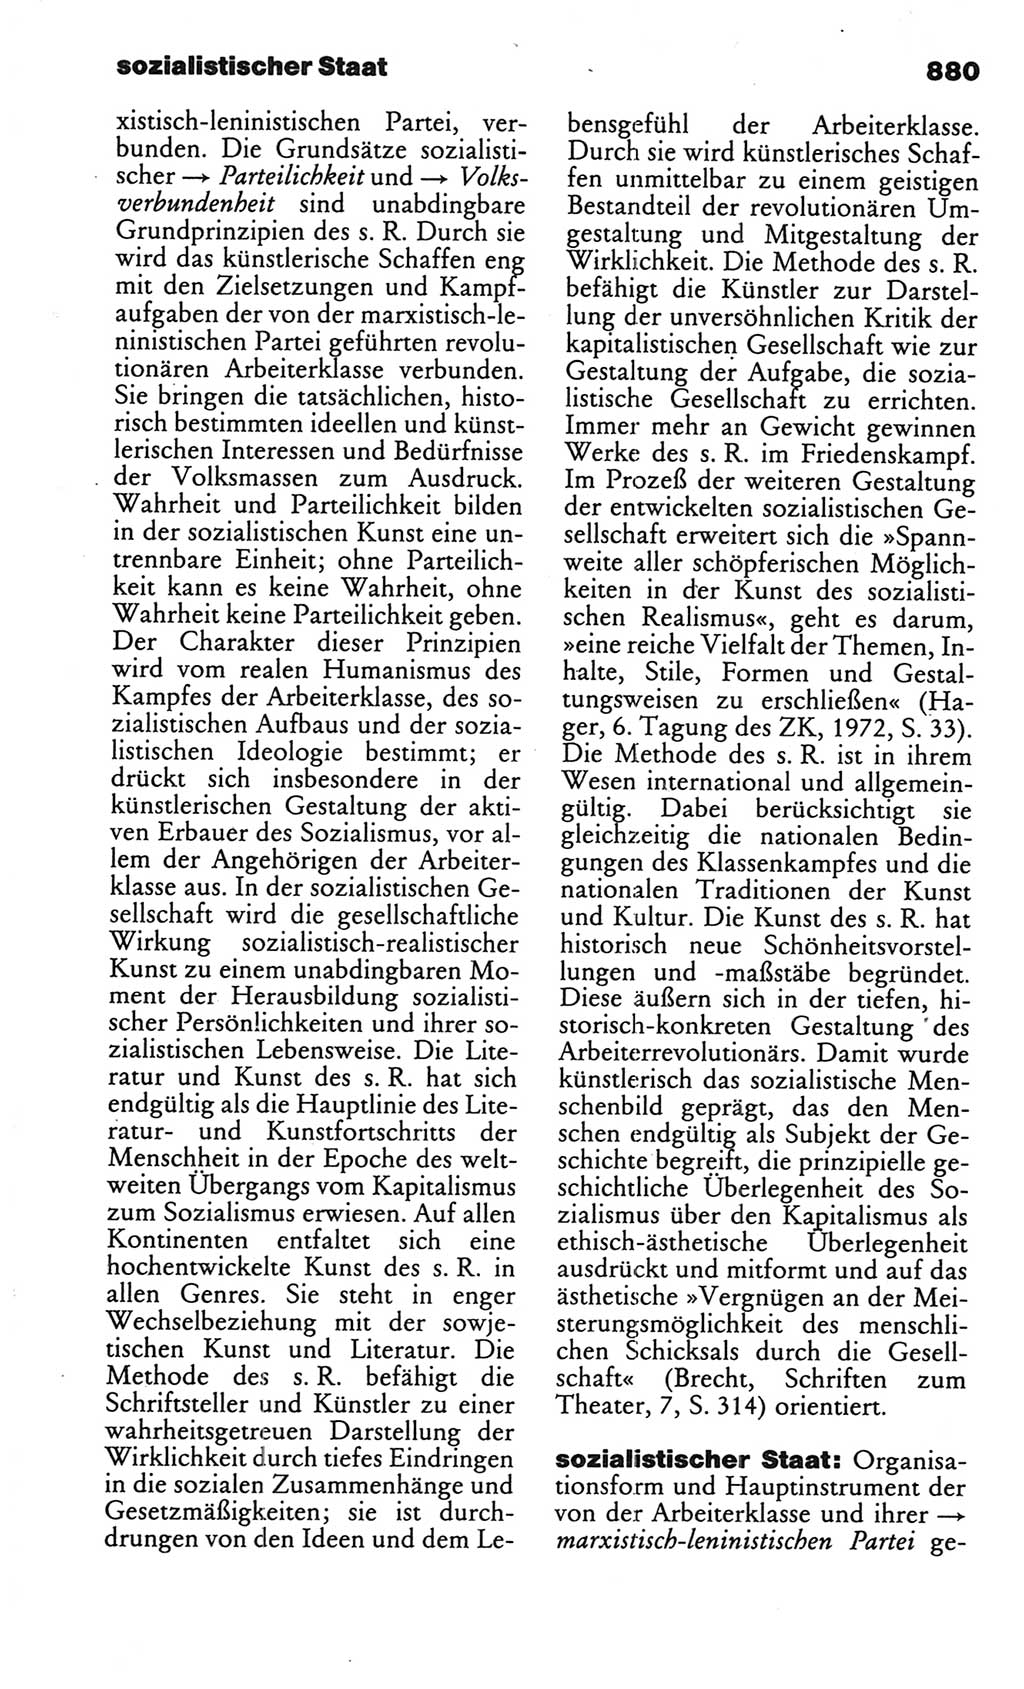 Kleines politisches Wörterbuch [Deutsche Demokratische Republik (DDR)] 1986, Seite 880 (Kl. pol. Wb. DDR 1986, S. 880)